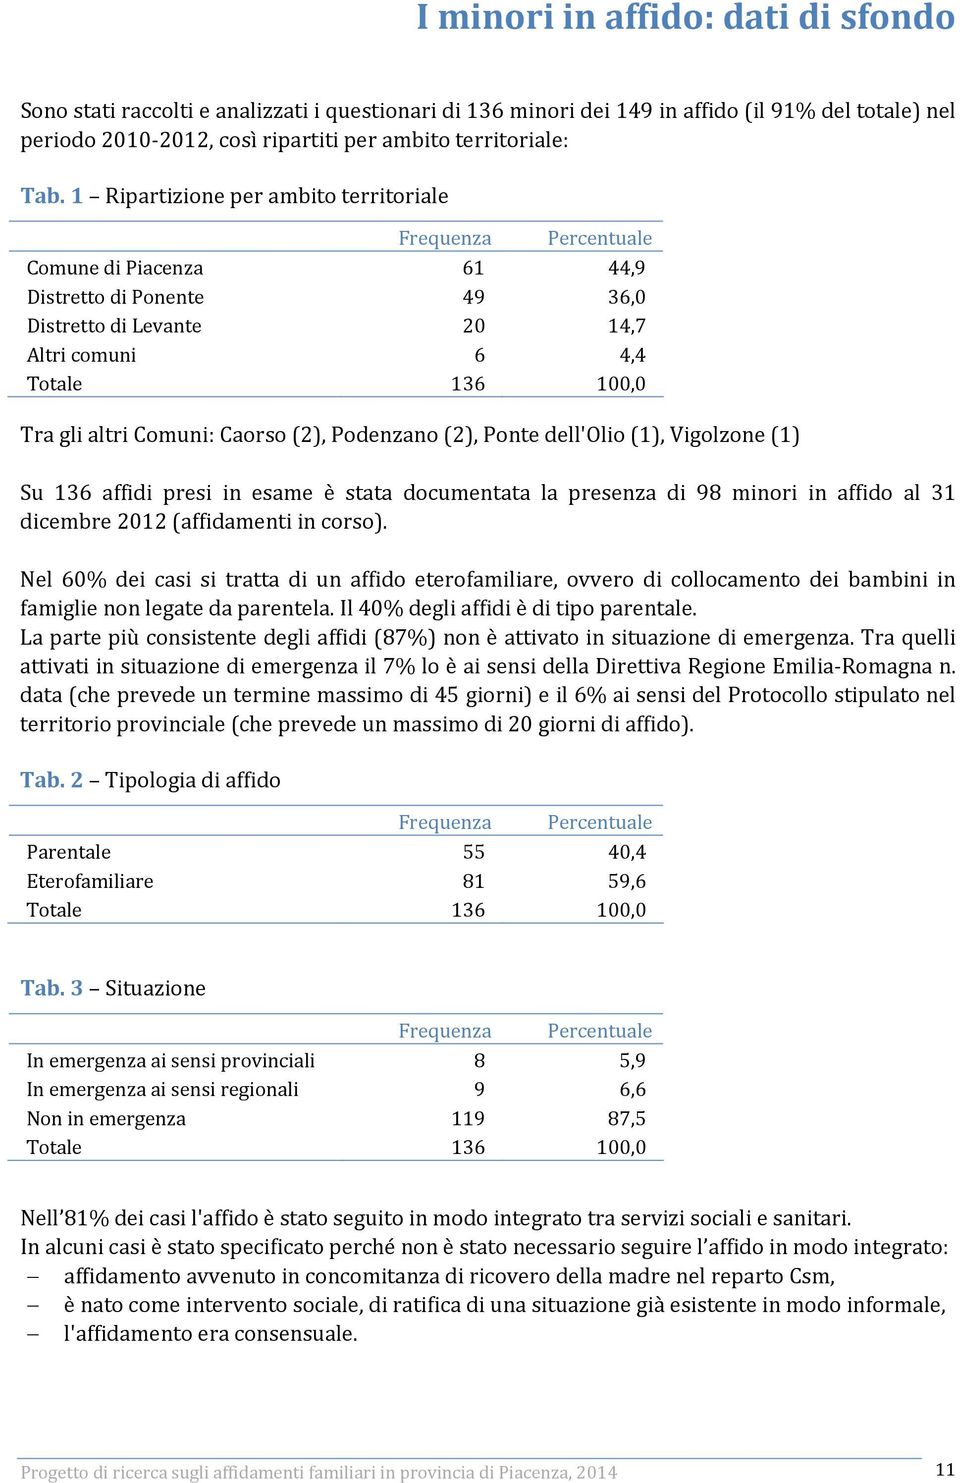 altri Comuni: Caorso (2), Podenzano (2), Ponte dell'olio (1), Vigolzone (1) Su 136 affidi presi in esame è stata documentata la presenza di 98 minori in affido al 31 dicembre 2012 (affidamenti in